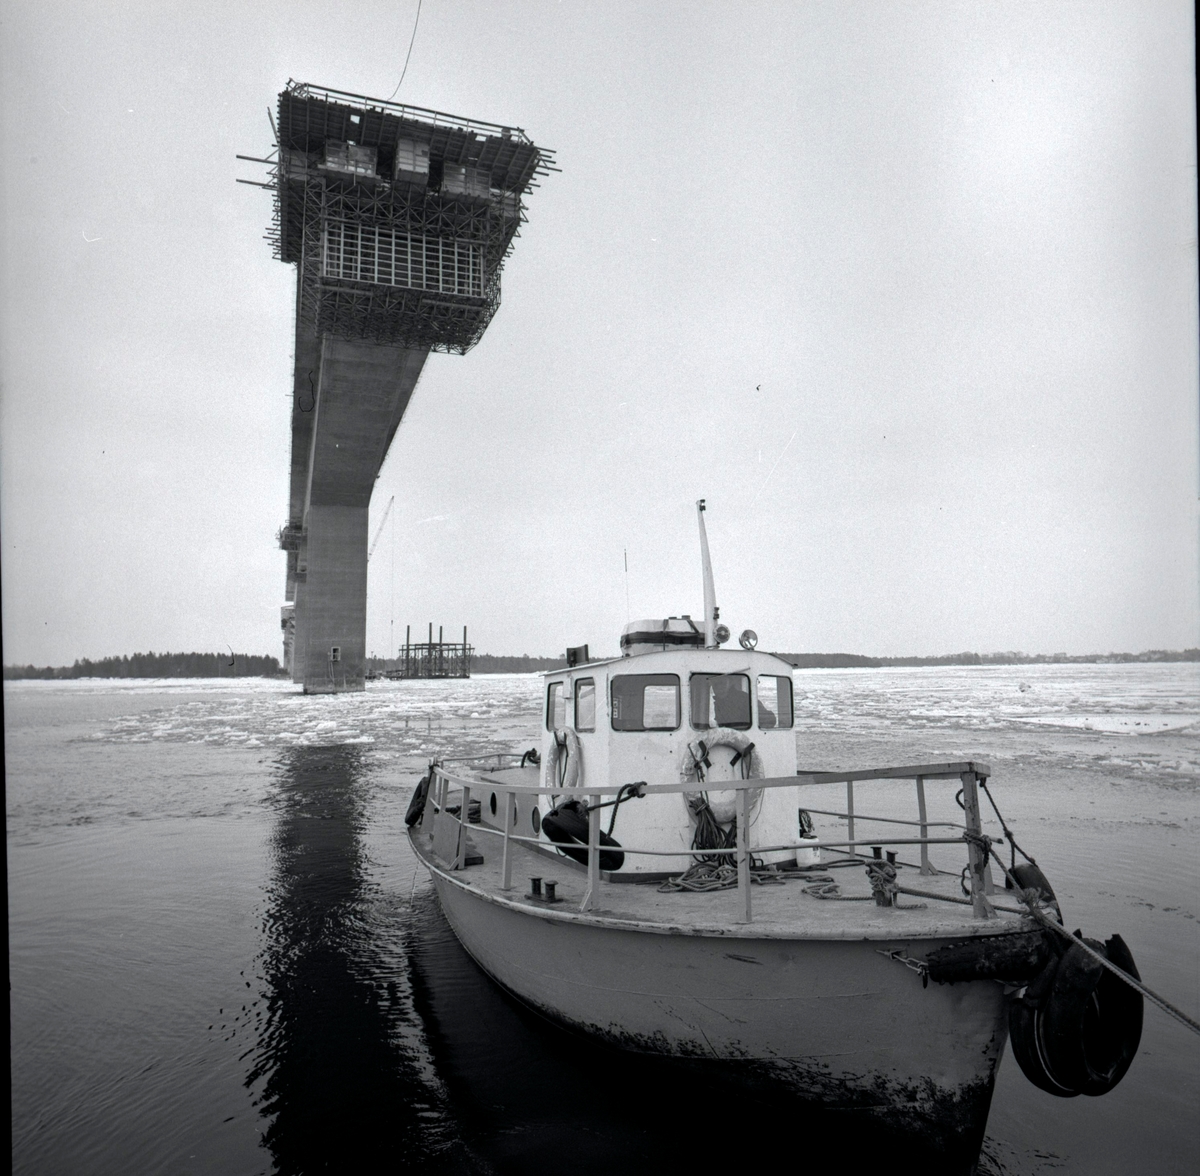 Vy från byggandet av Ölandsbron.